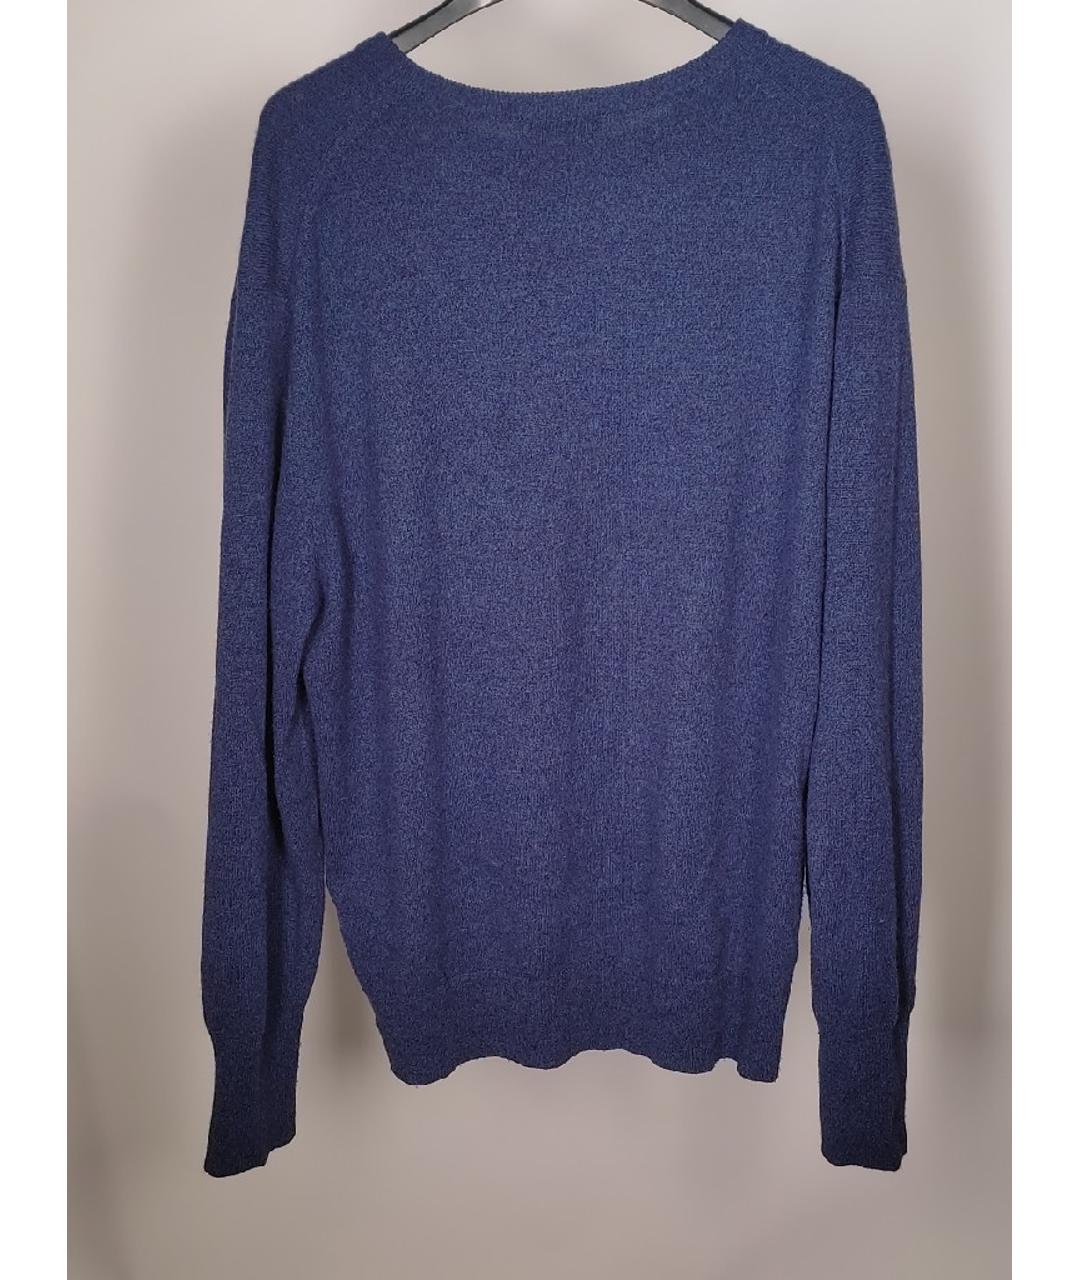 N.PEAL Синий кашемировый джемпер / свитер, фото 2